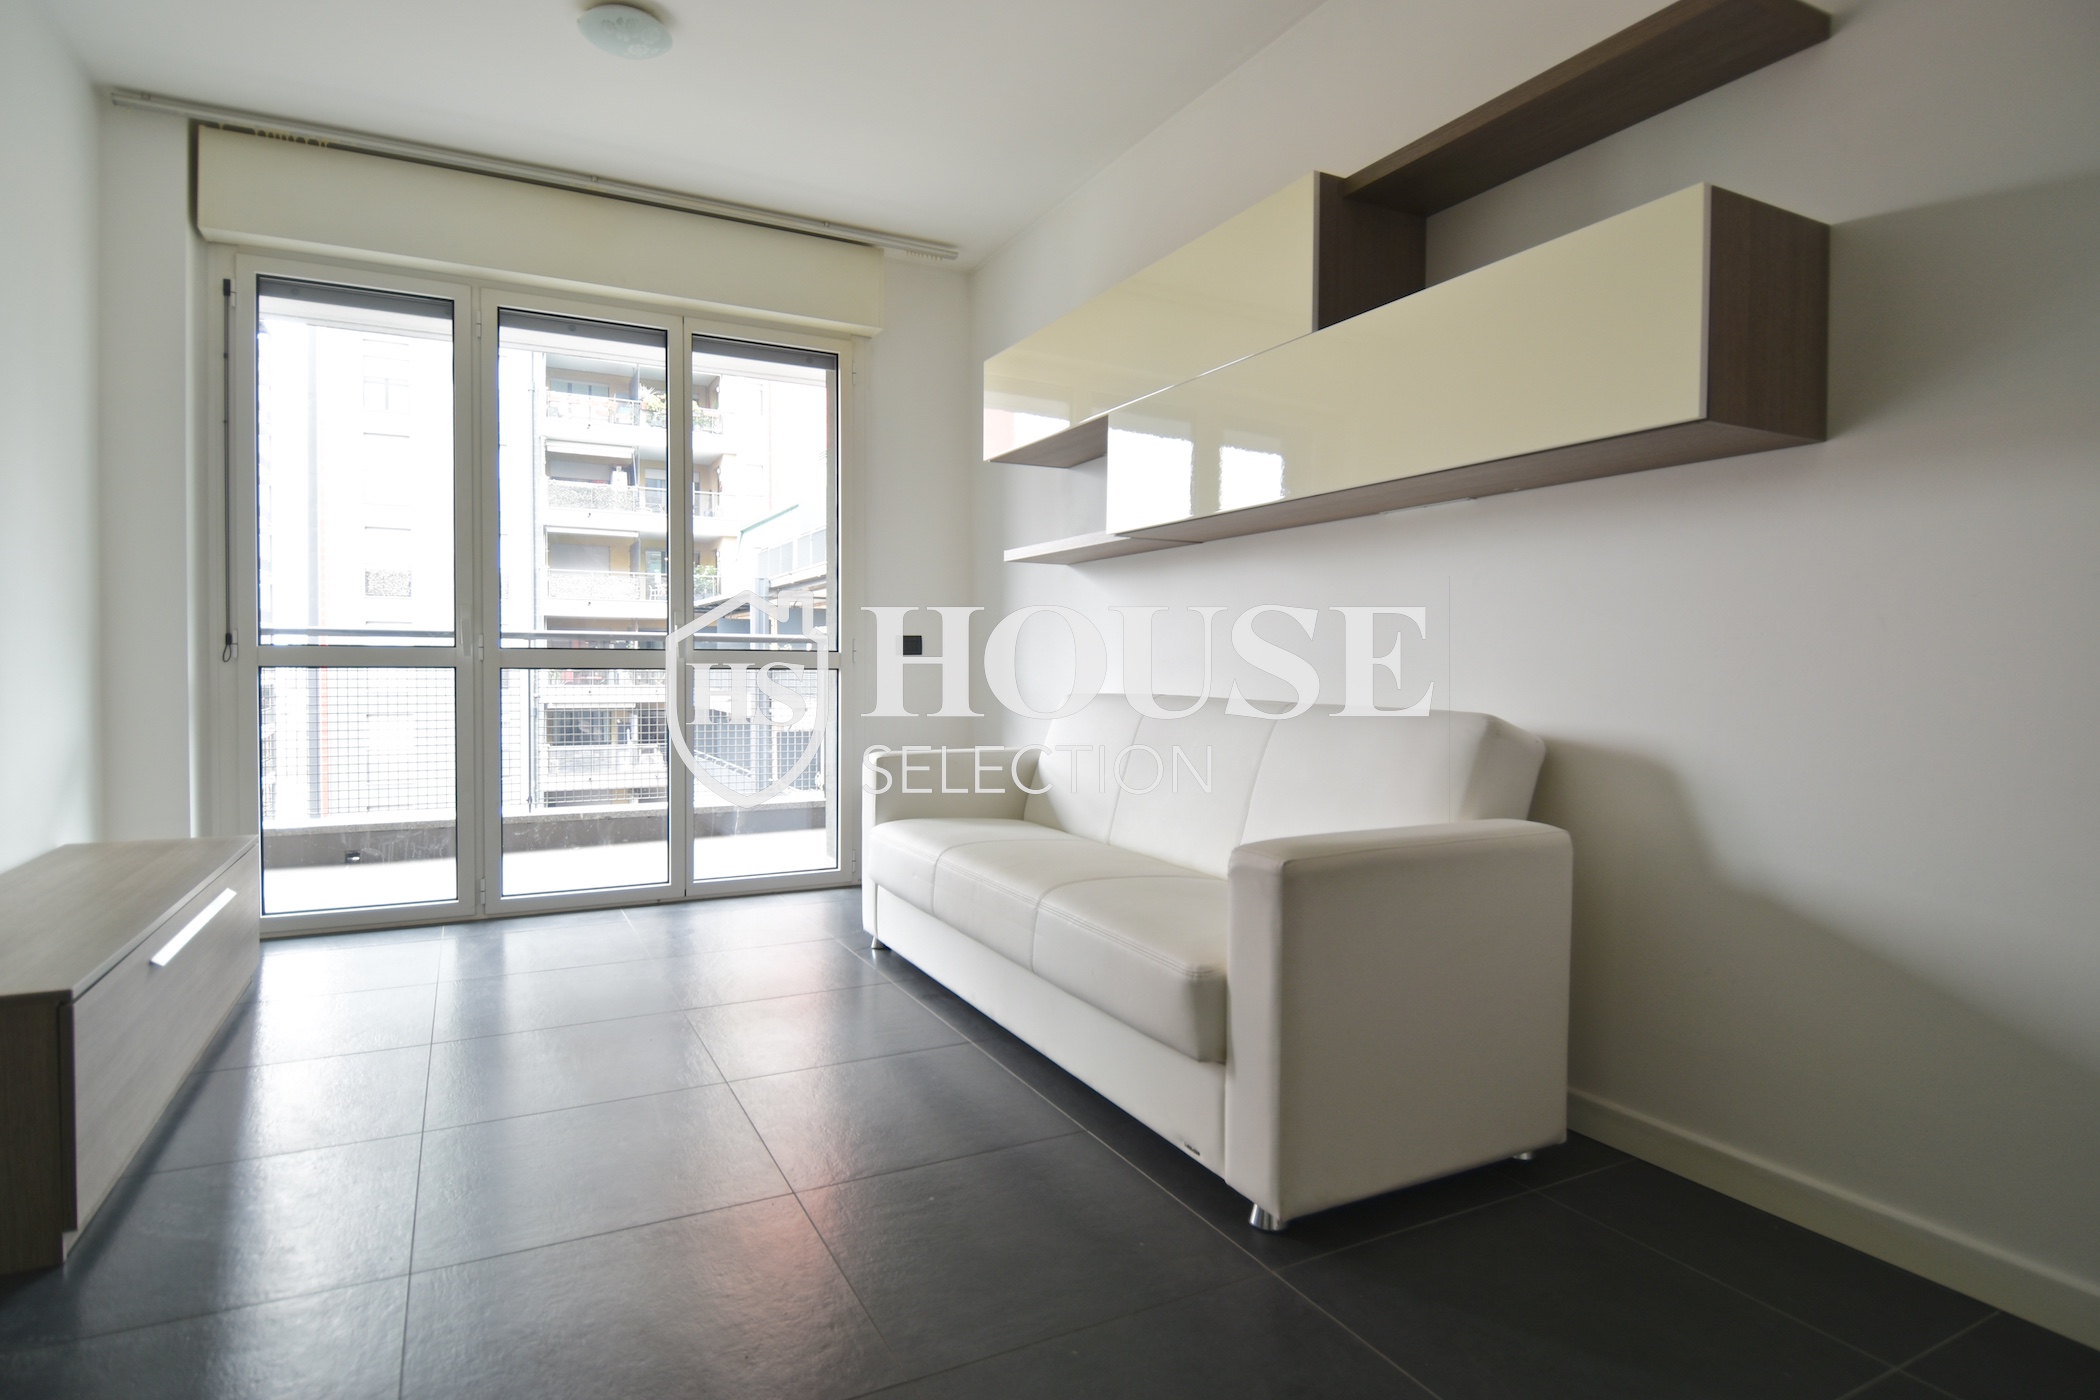 Vendita appartamento con terrazzo Bovisa, ottavo piano, nuova costruzione, Politecnico di Milano 1